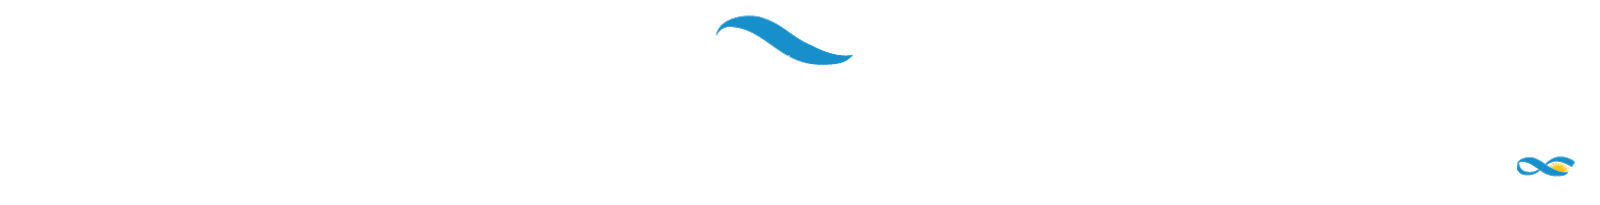 Jornadas Internacionales Ciencias Sociales y Religión CEIL-CONICET